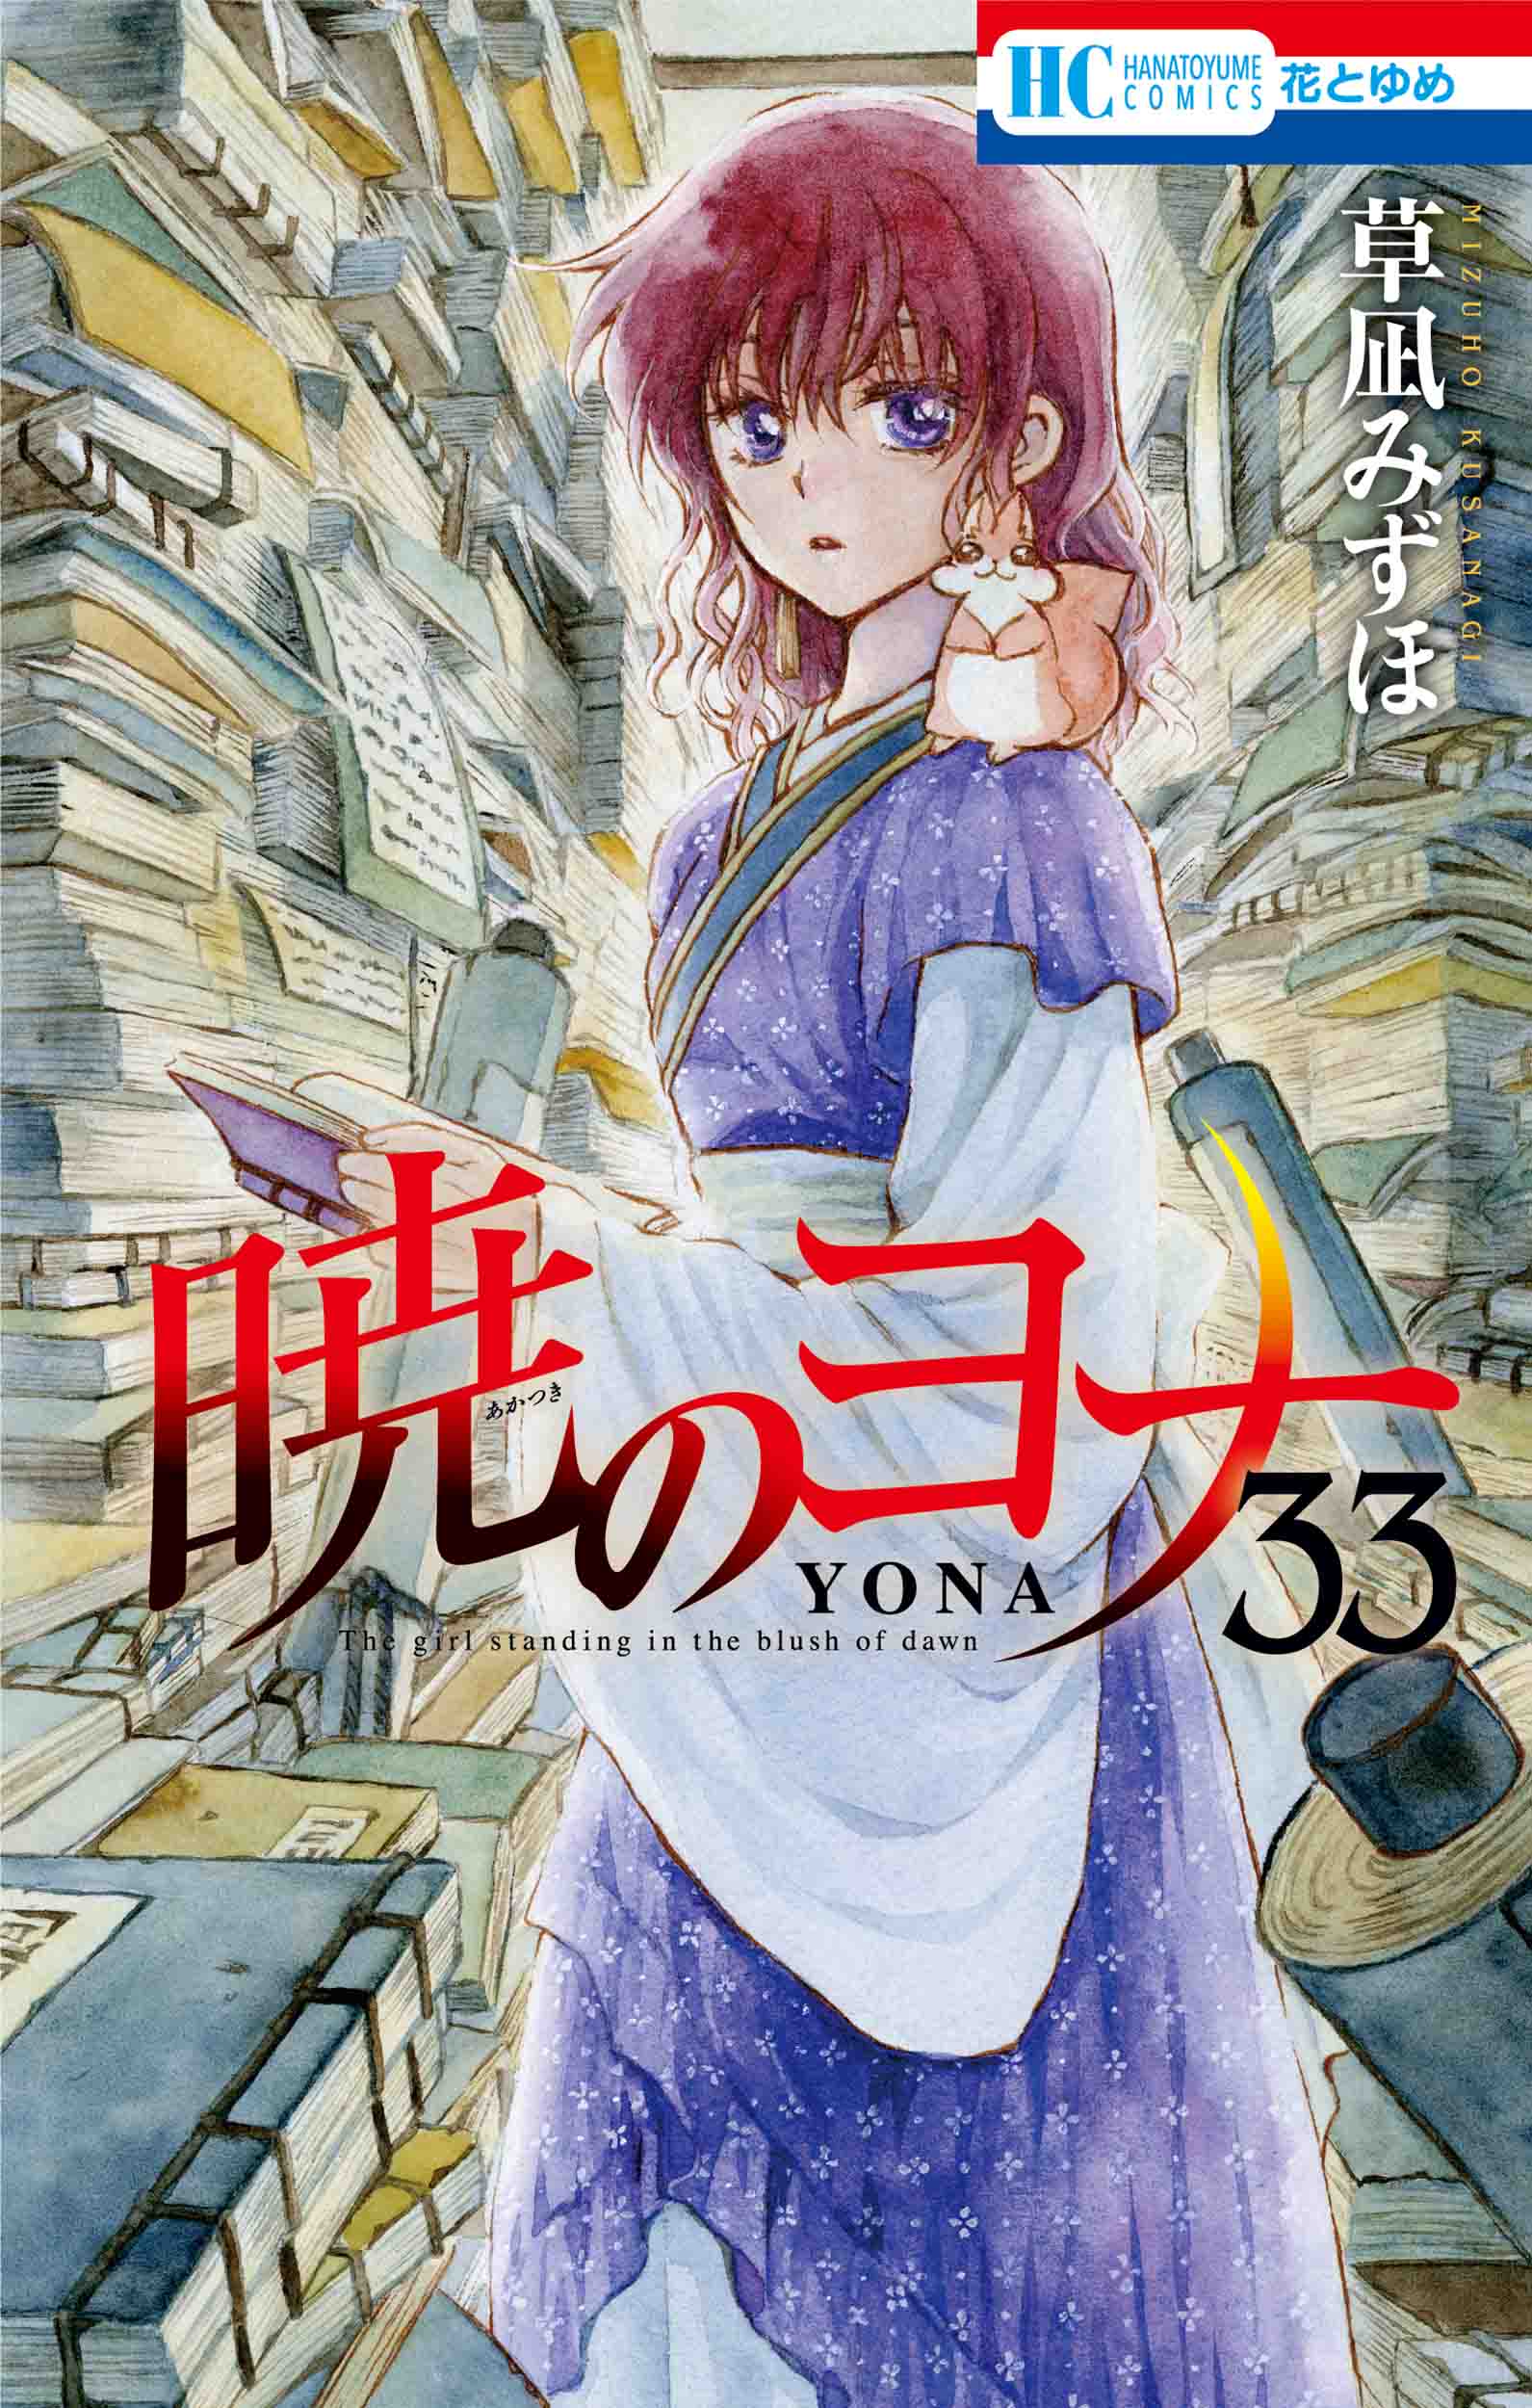 草凪みずほ「暁のヨナ」第33巻 2020年8月20日発売!